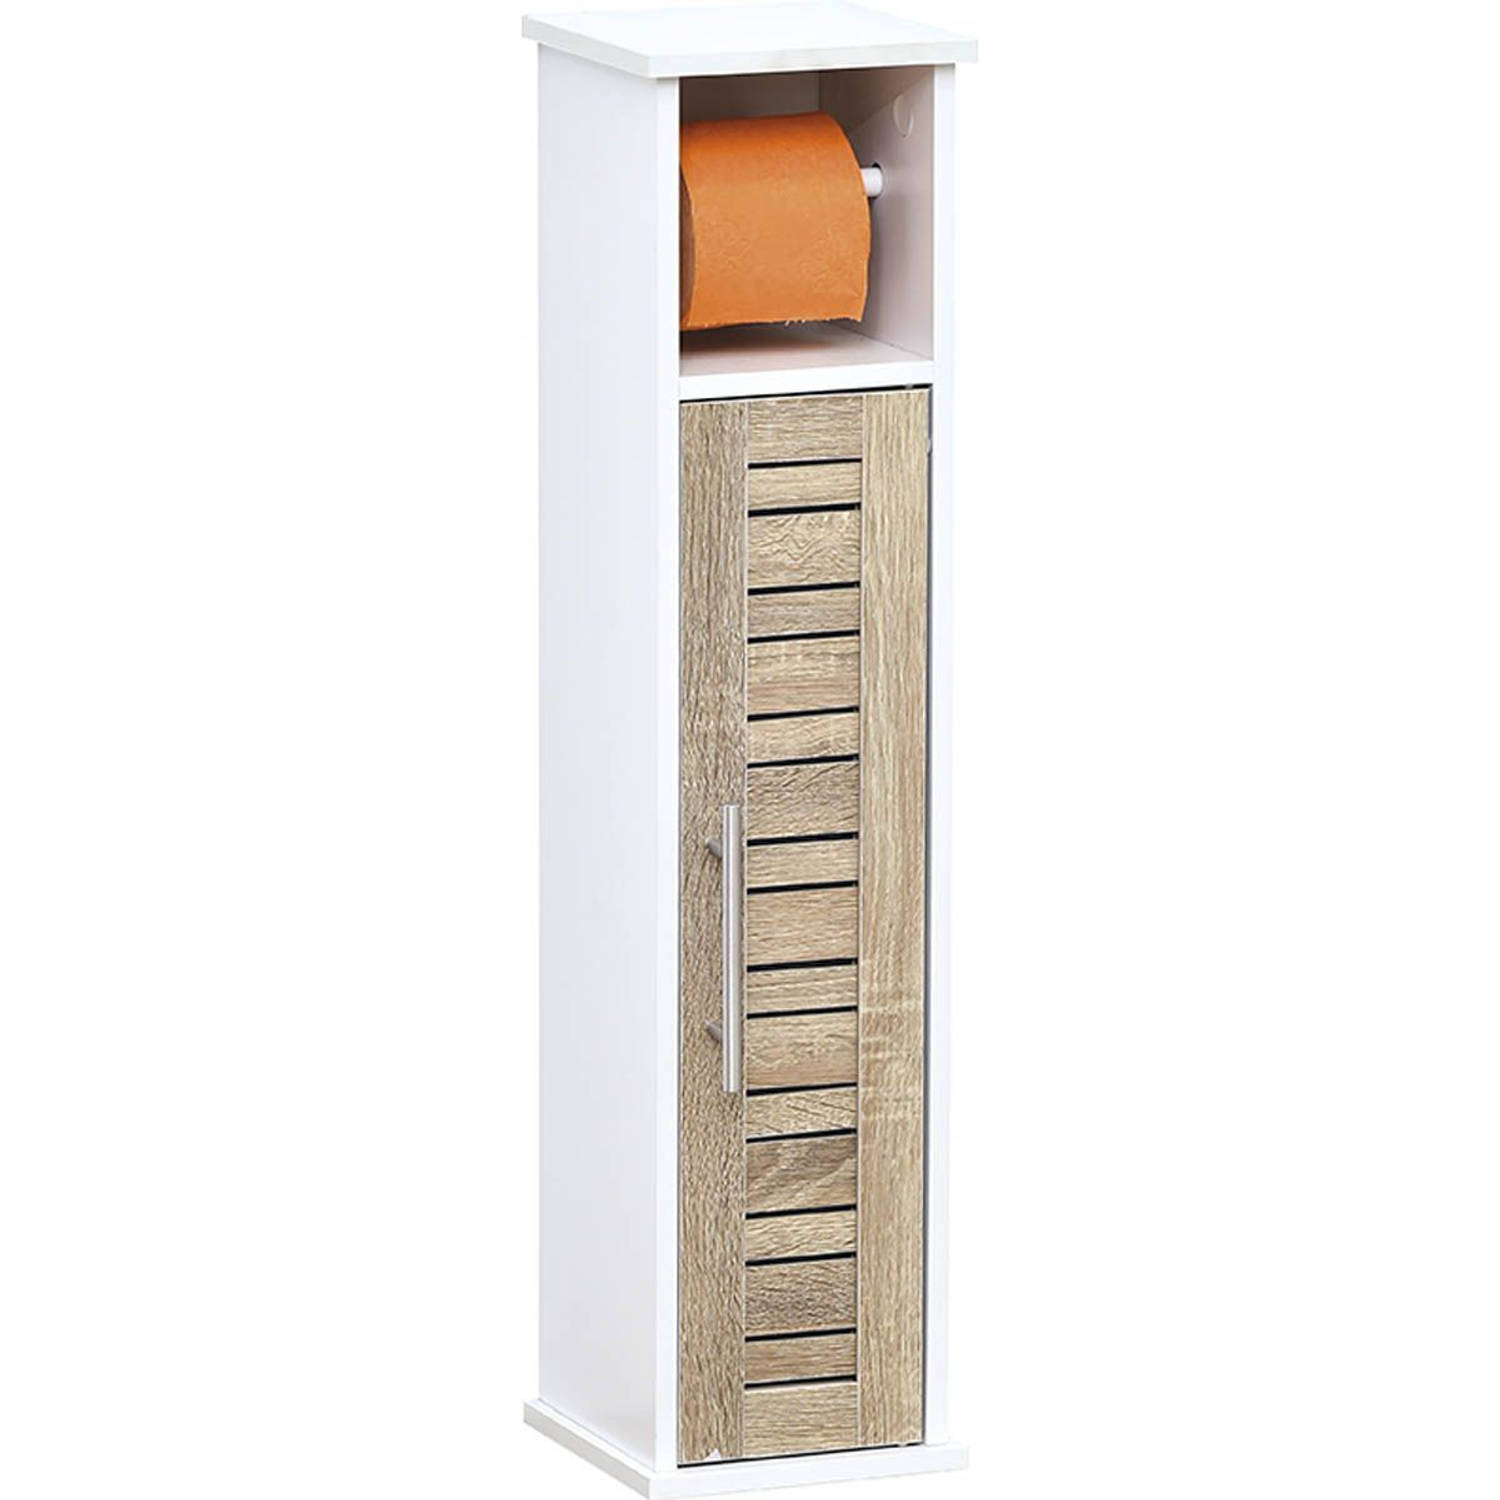 Gebor - Stockholm Toiletpapier Met Reserve Dispenser Met 1 Deur En 1 Plank Binnenin - Wit/bruin - 75x18x18cm -